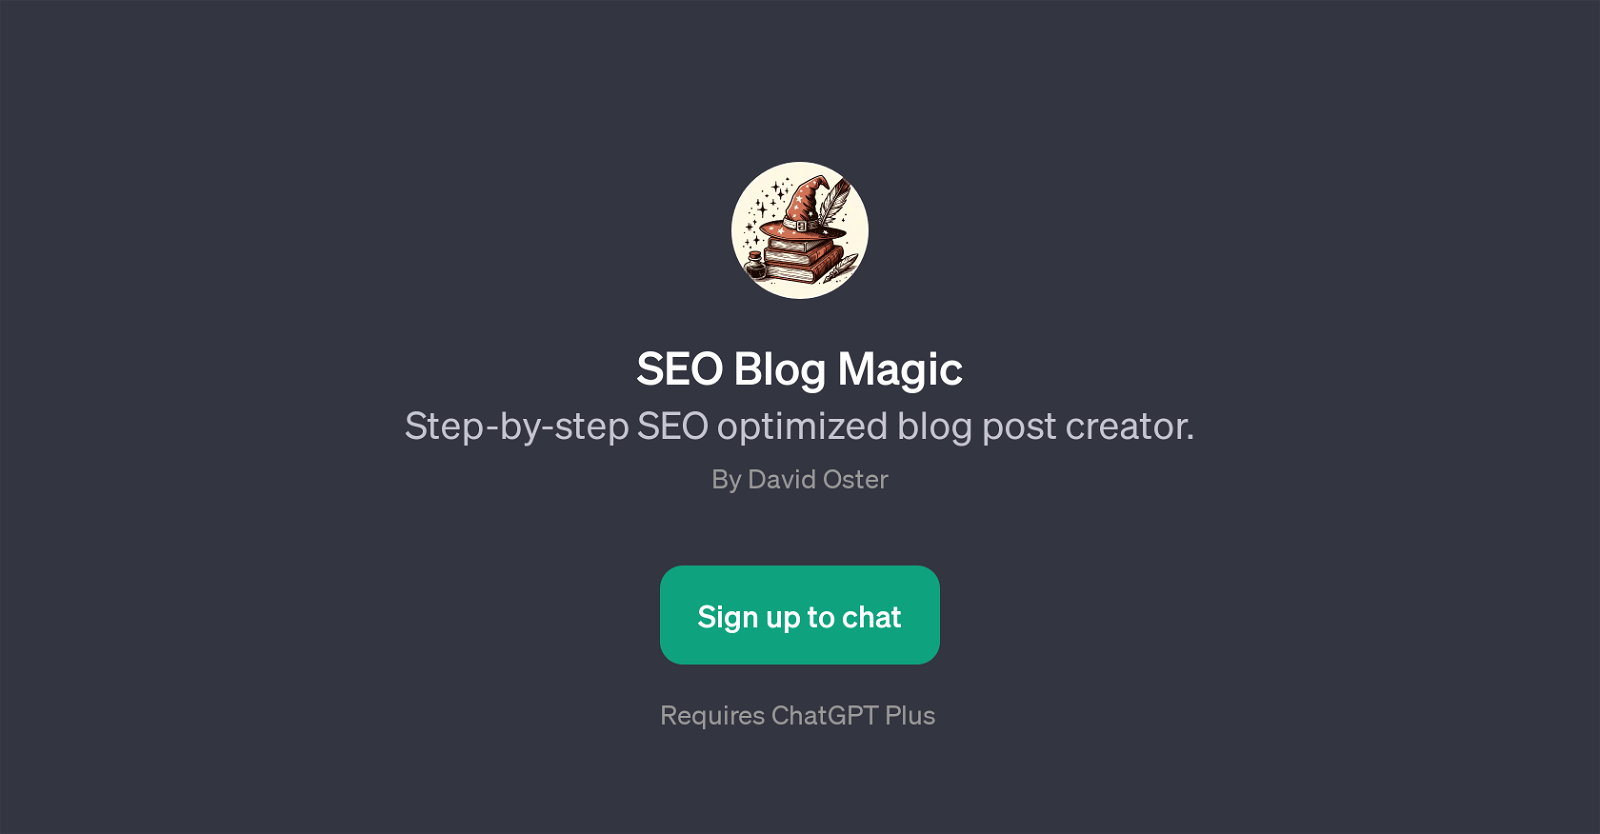 SEO Blog Magic website